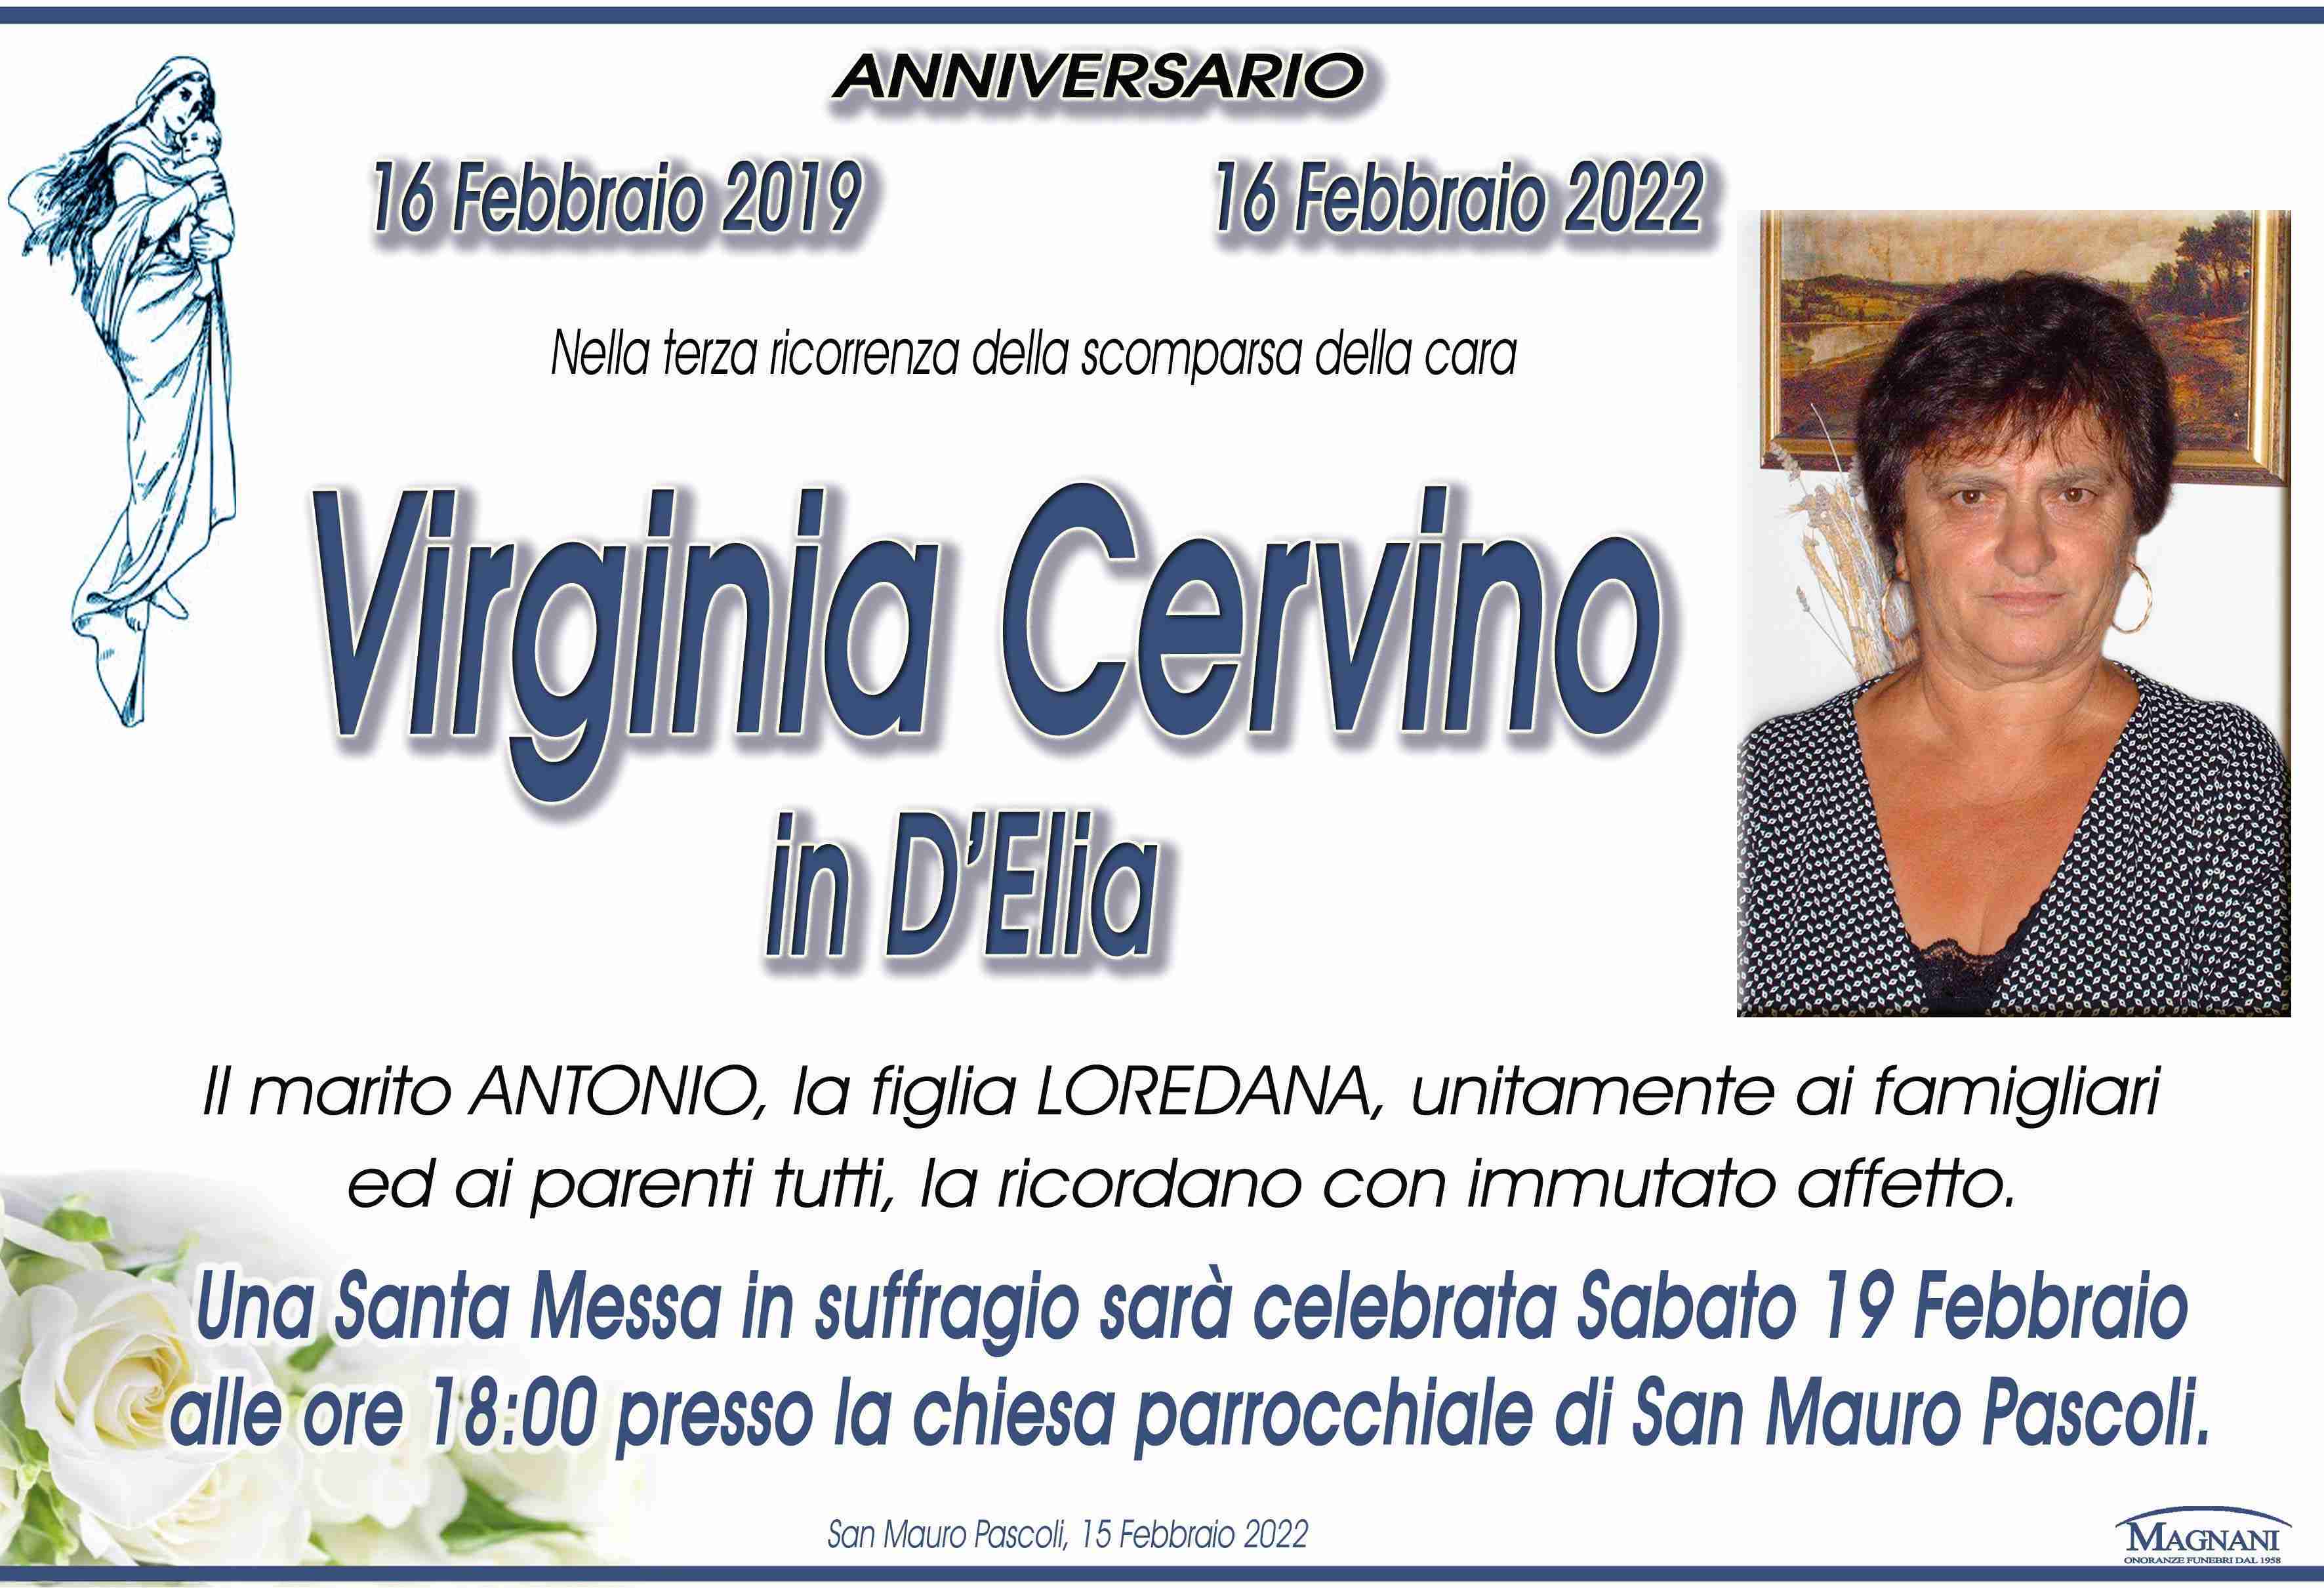 Virginia Cervino